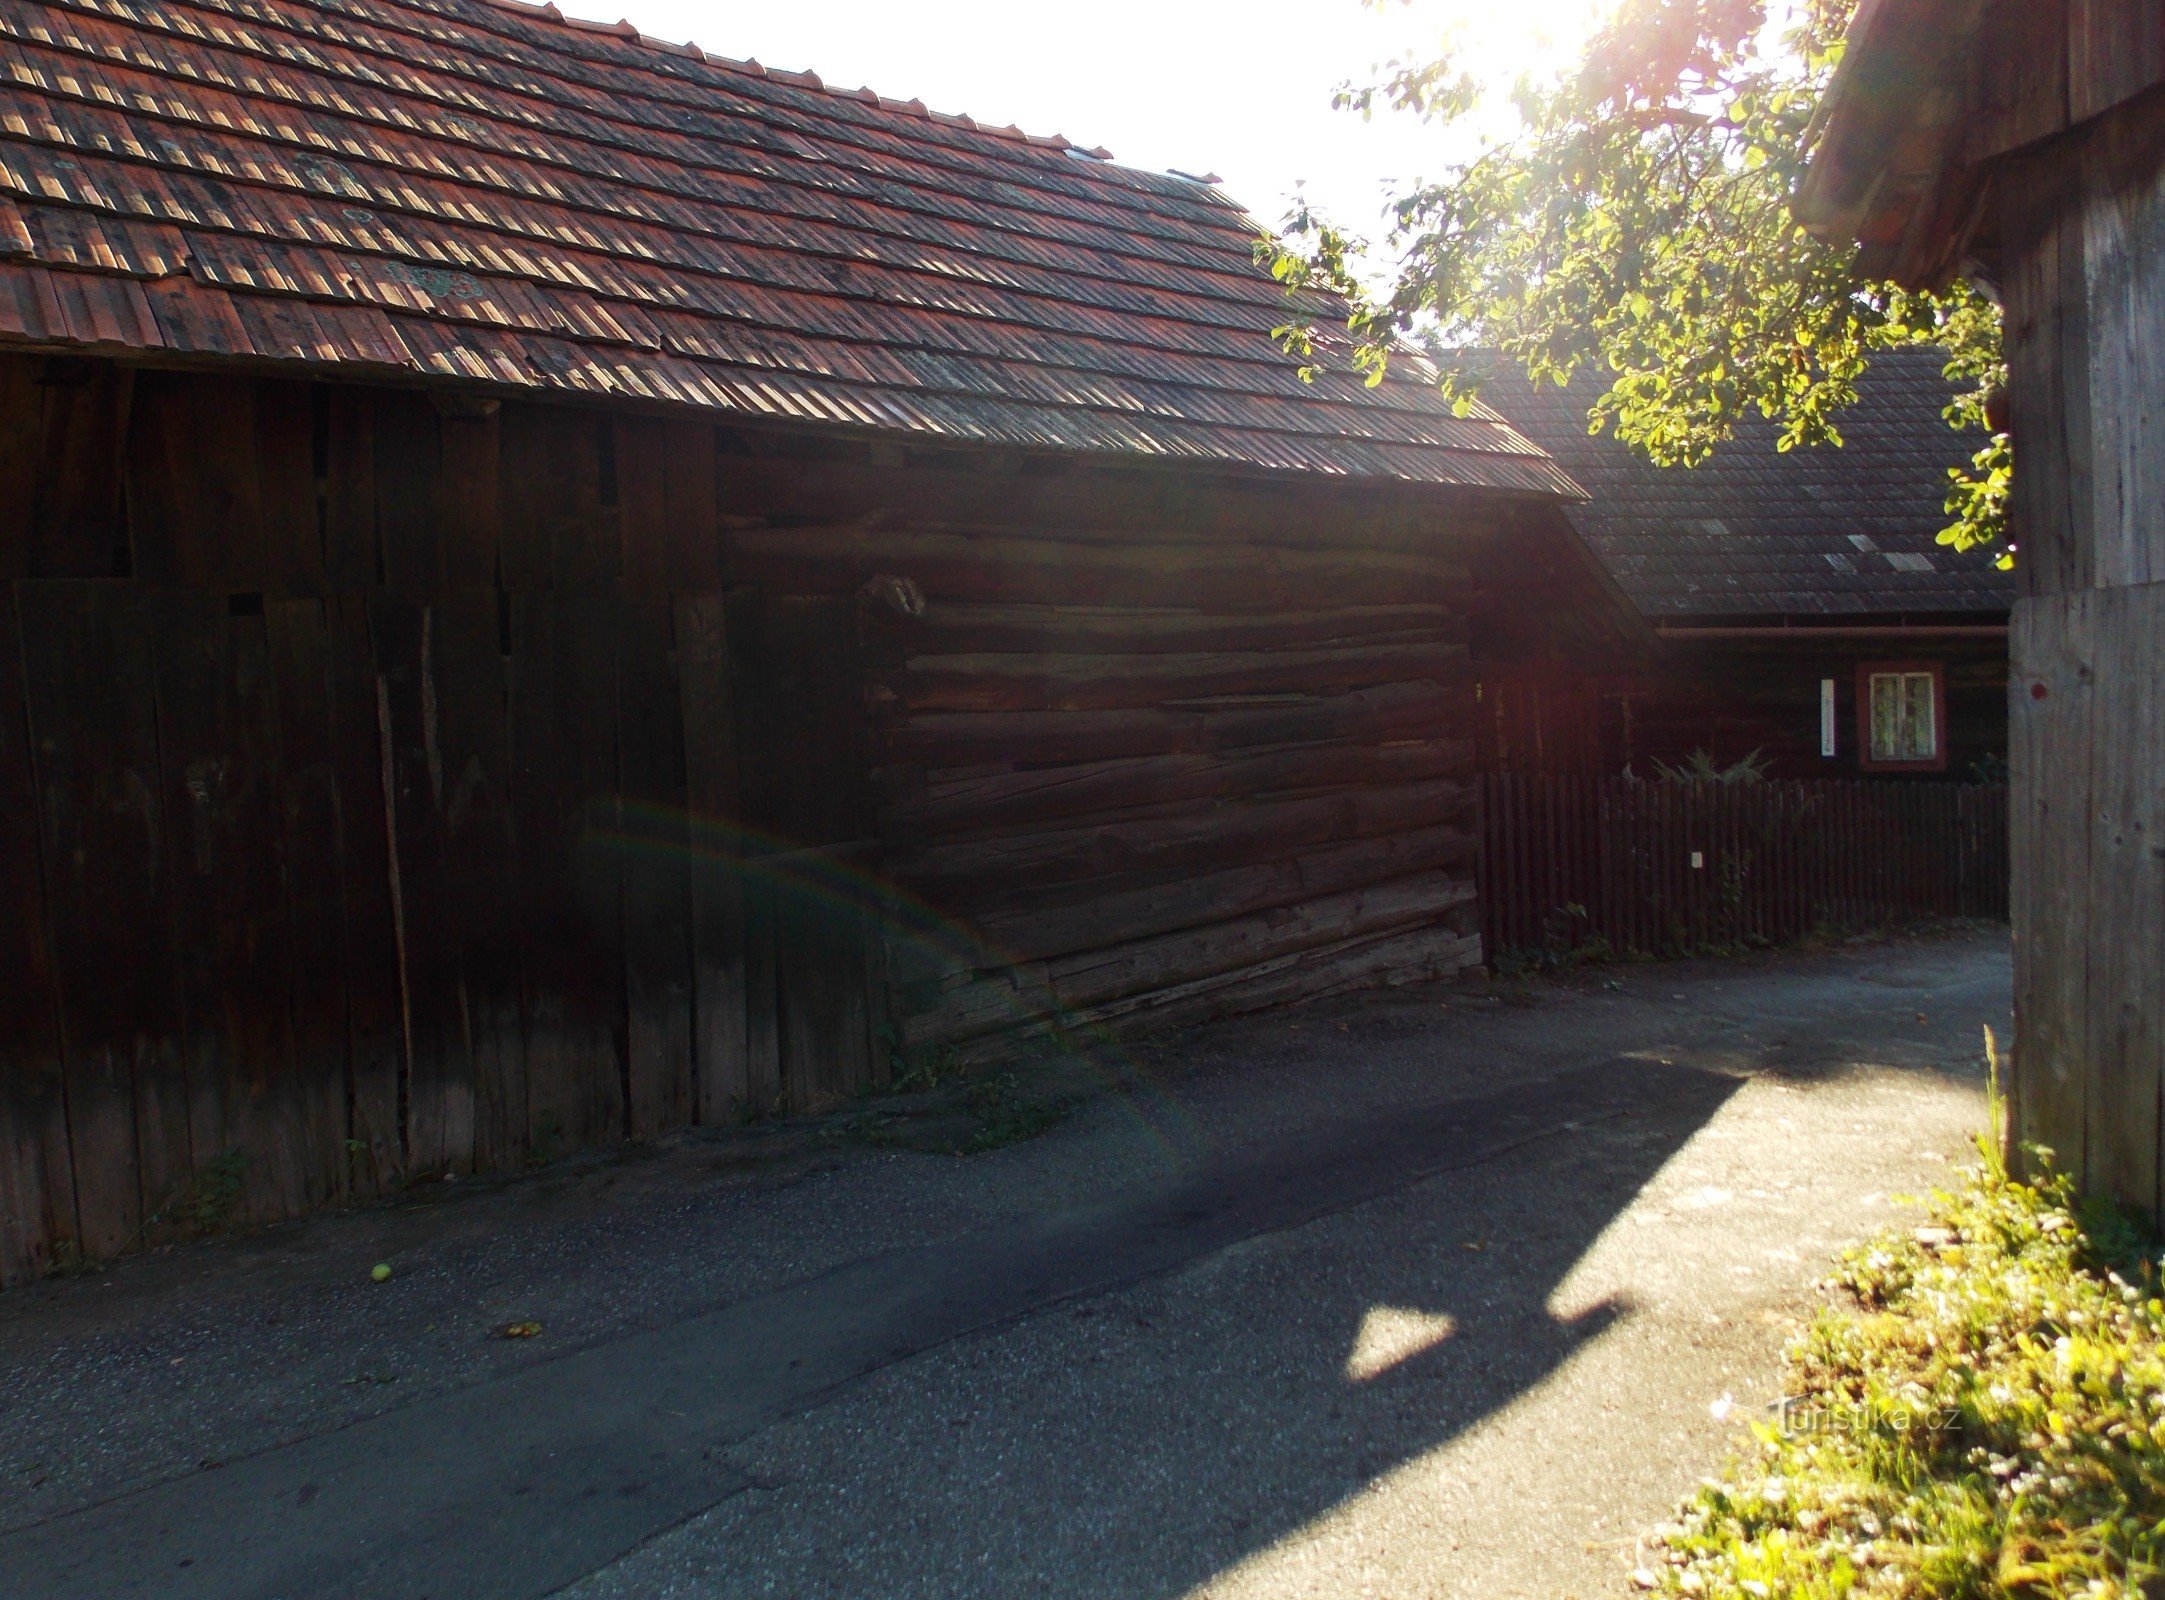 esempio di architettura popolare valacca del villaggio di Prlov